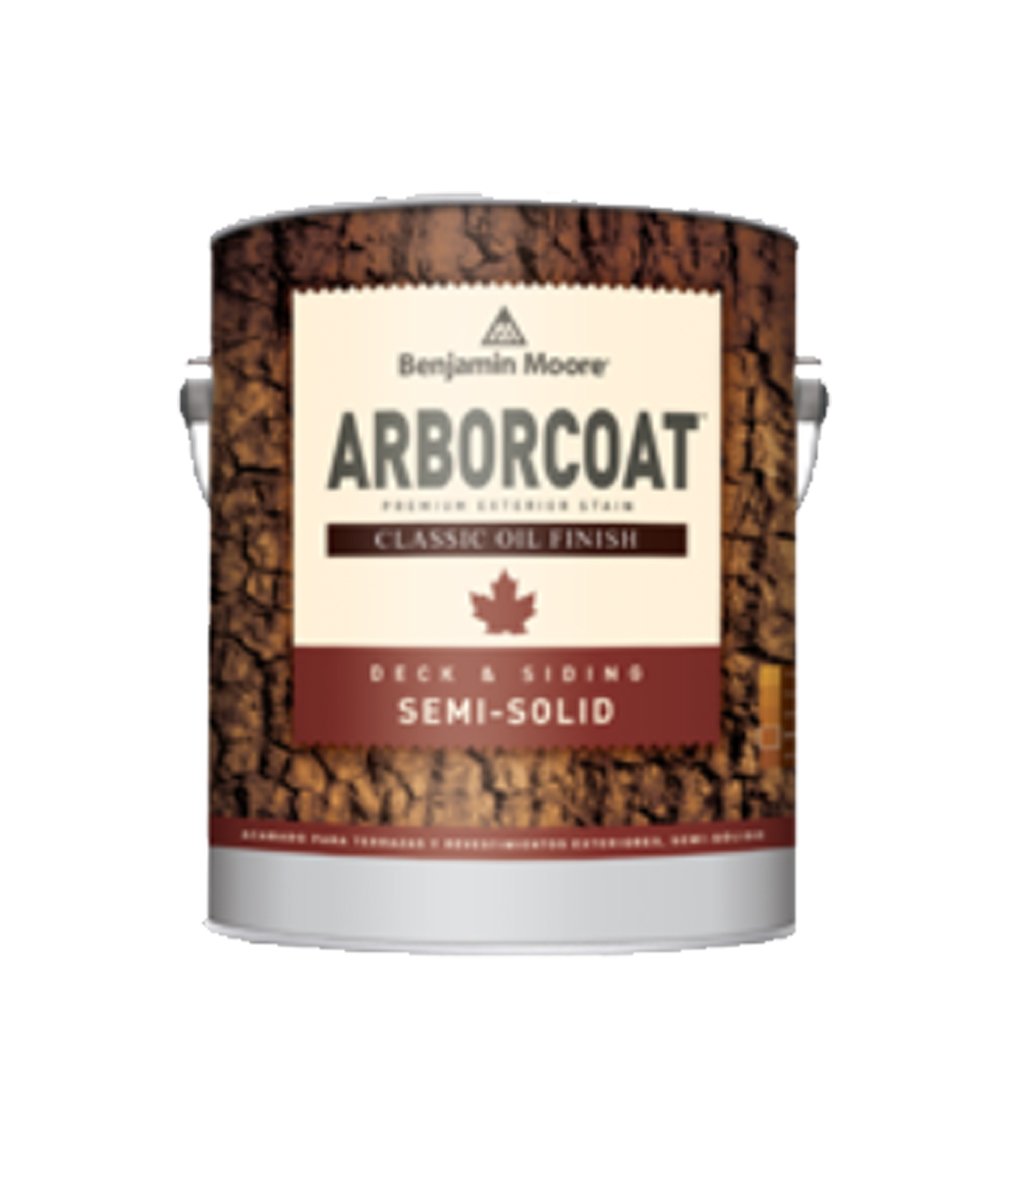 Arborcoat Semi-Solid Classic Oil Finish (Gallon)